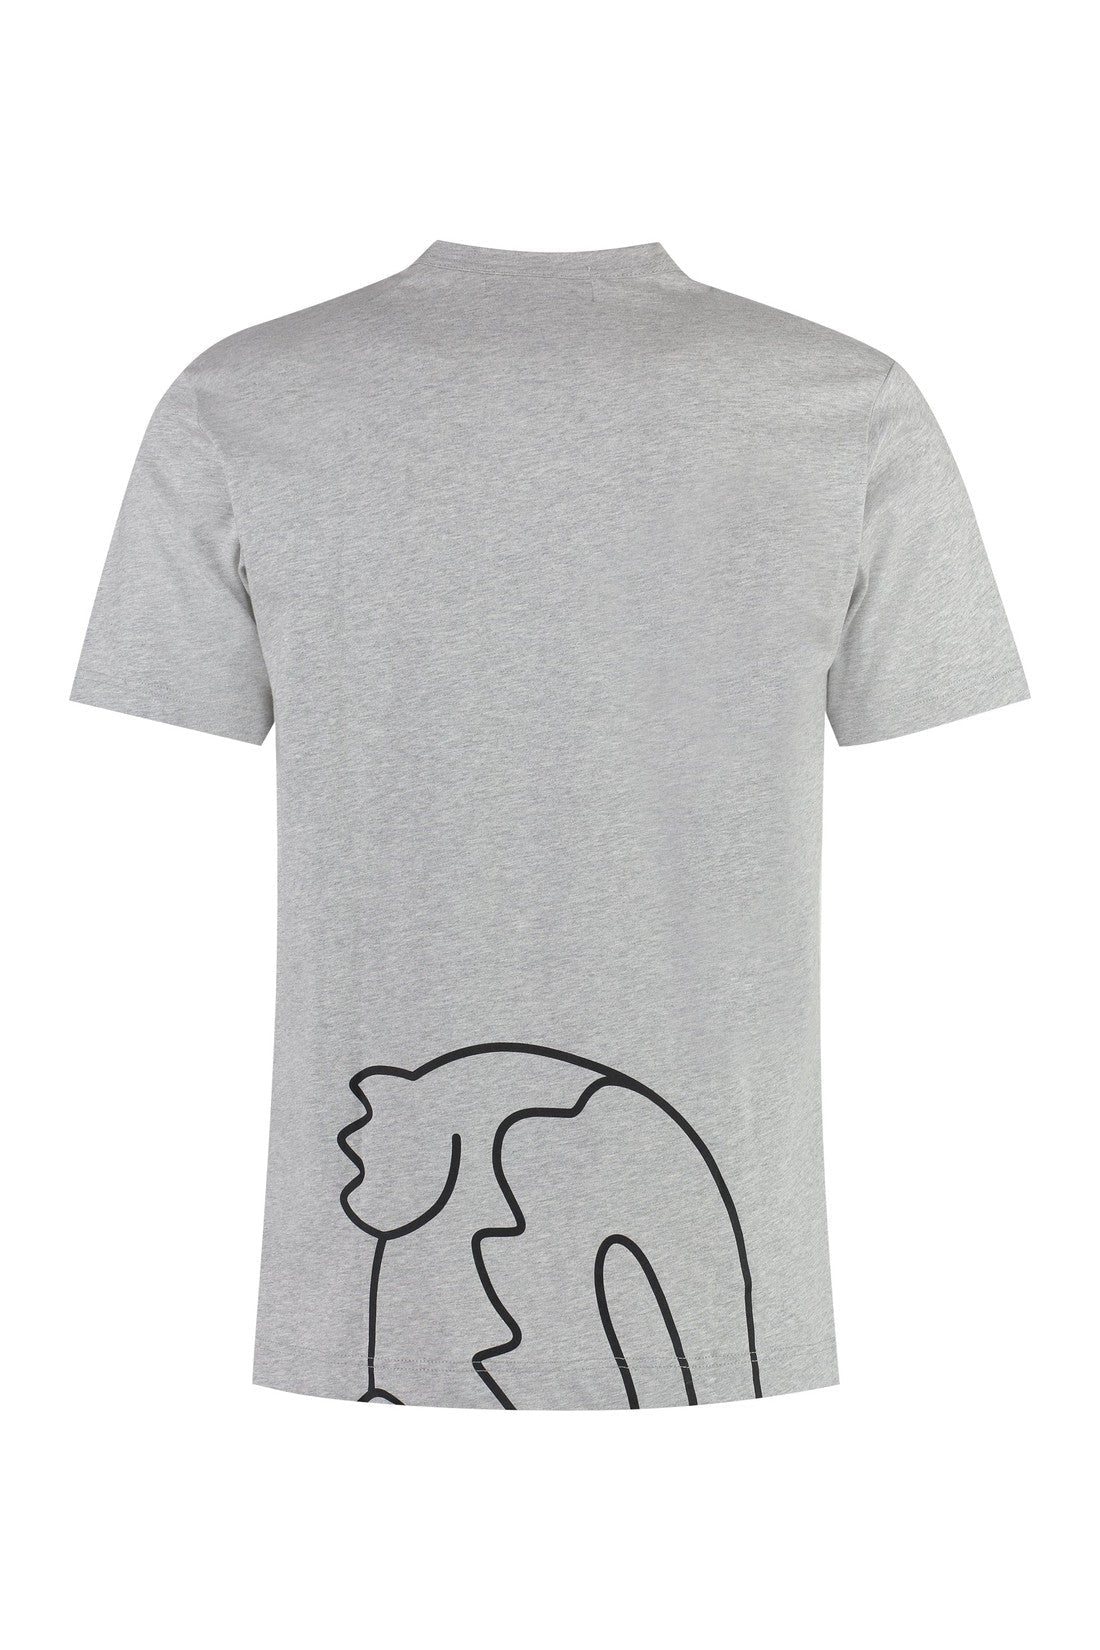 Comme des Garçons SHIRT-OUTLET-SALE-Lacoste x Comme des Garçons - Short sleeve printed cotton t-shirt-ARCHIVIST